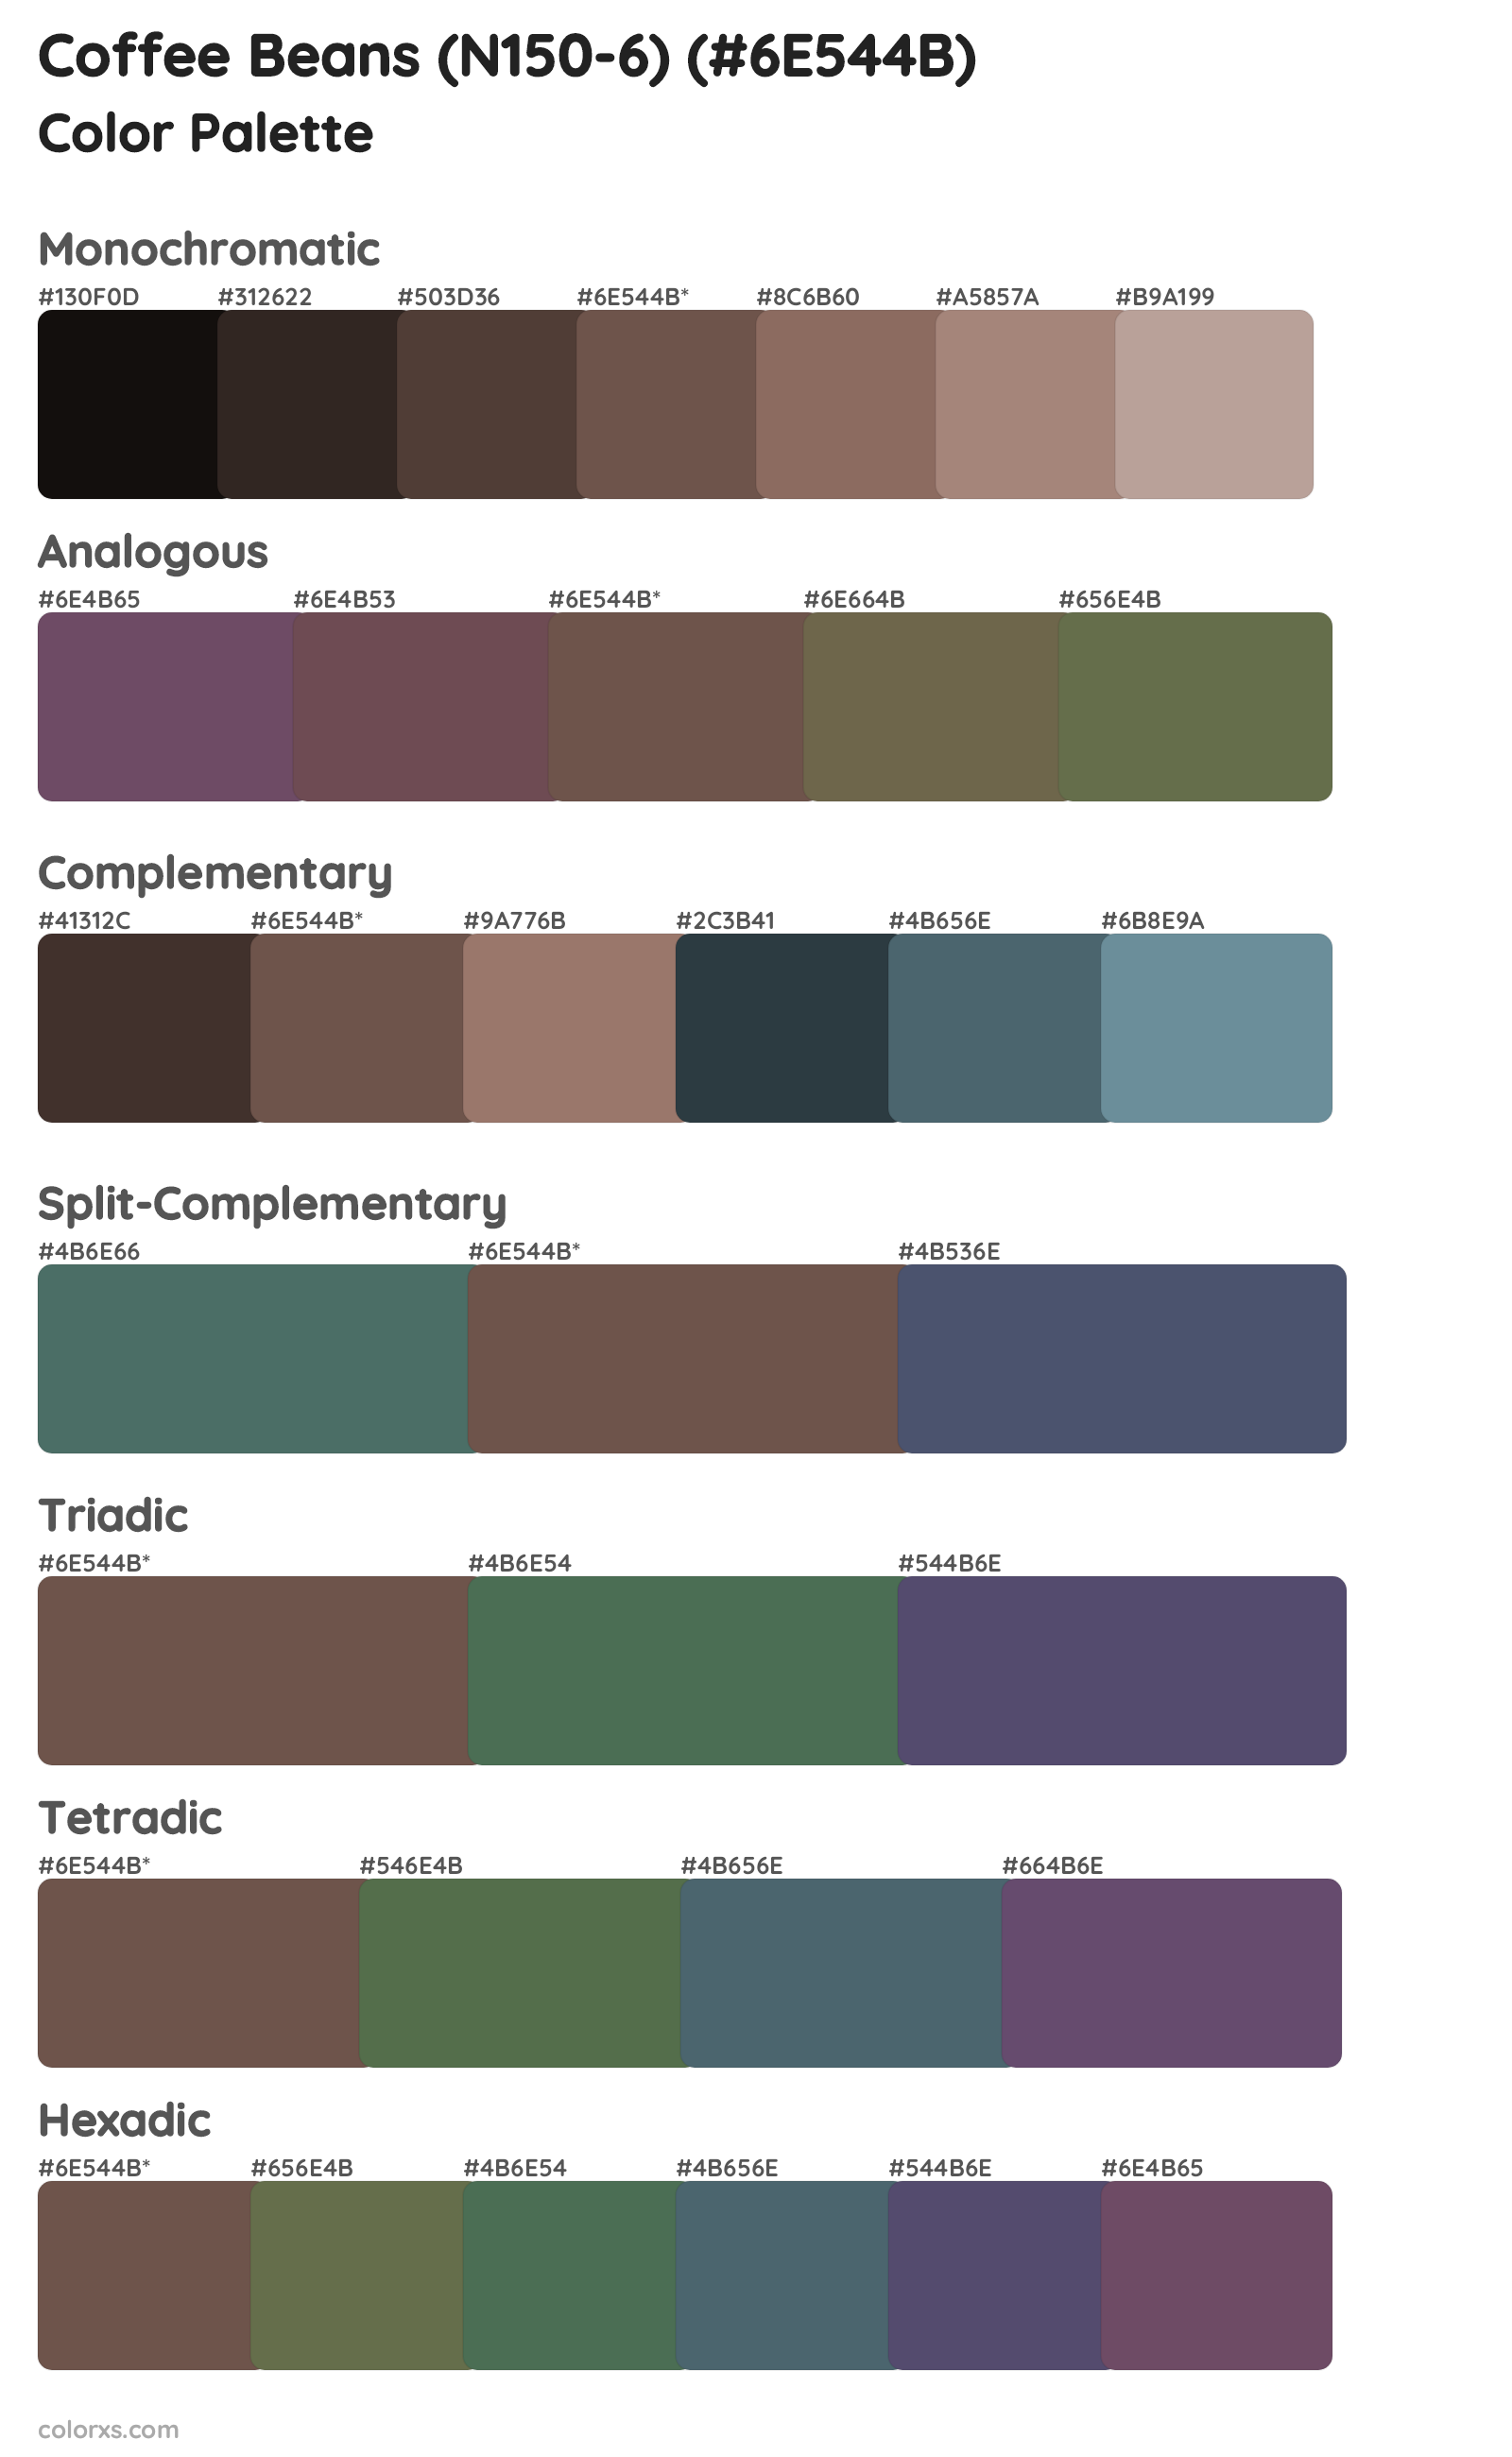 Coffee Beans (N150-6) Color Scheme Palettes